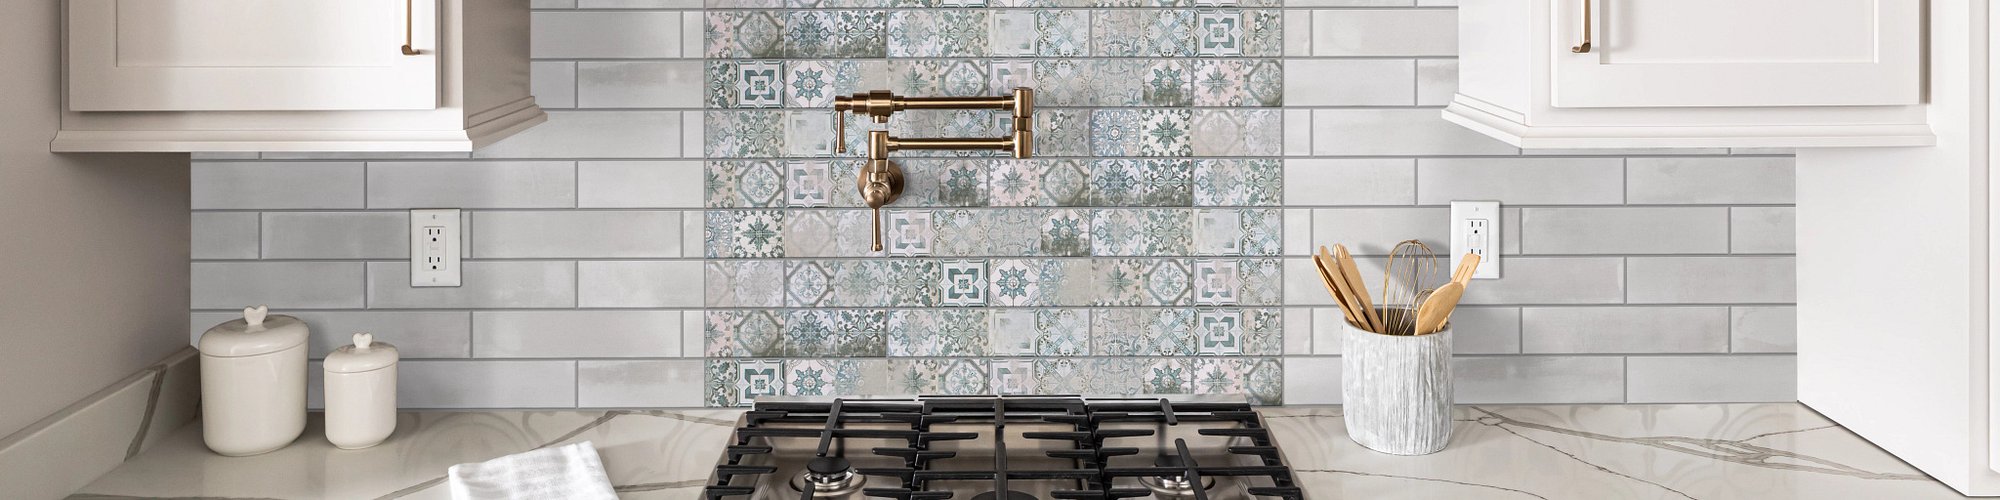 kitchen Tile Backsplash from Grand Design Floors in Maple Grove, MN